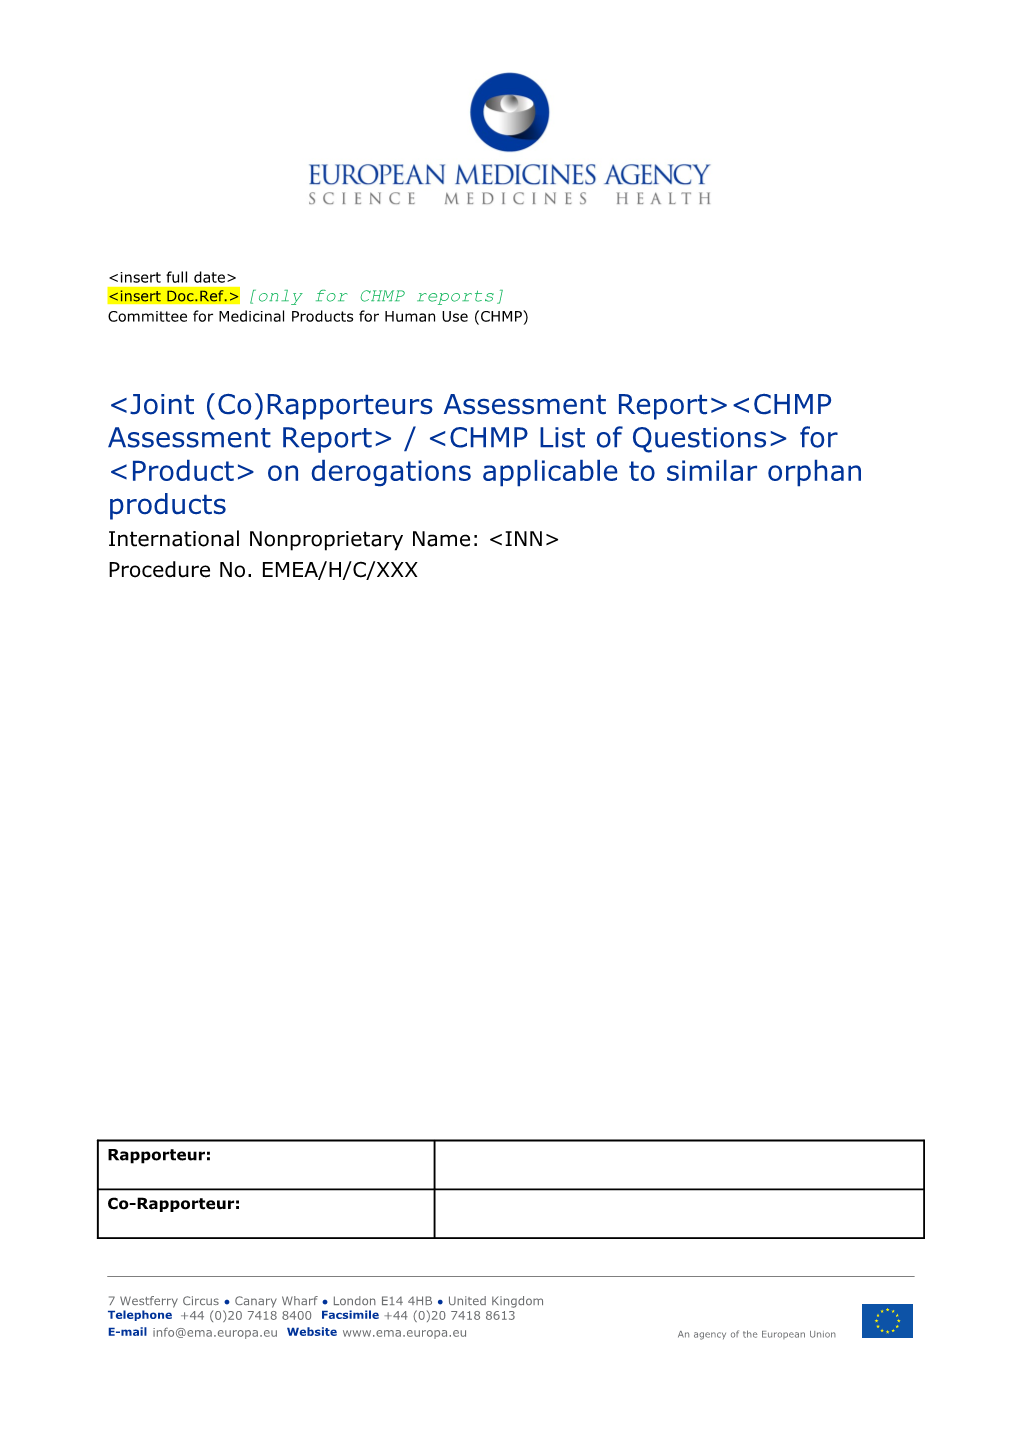 CHMP and Rapporteurs JAR on Derogation - Rev04.14